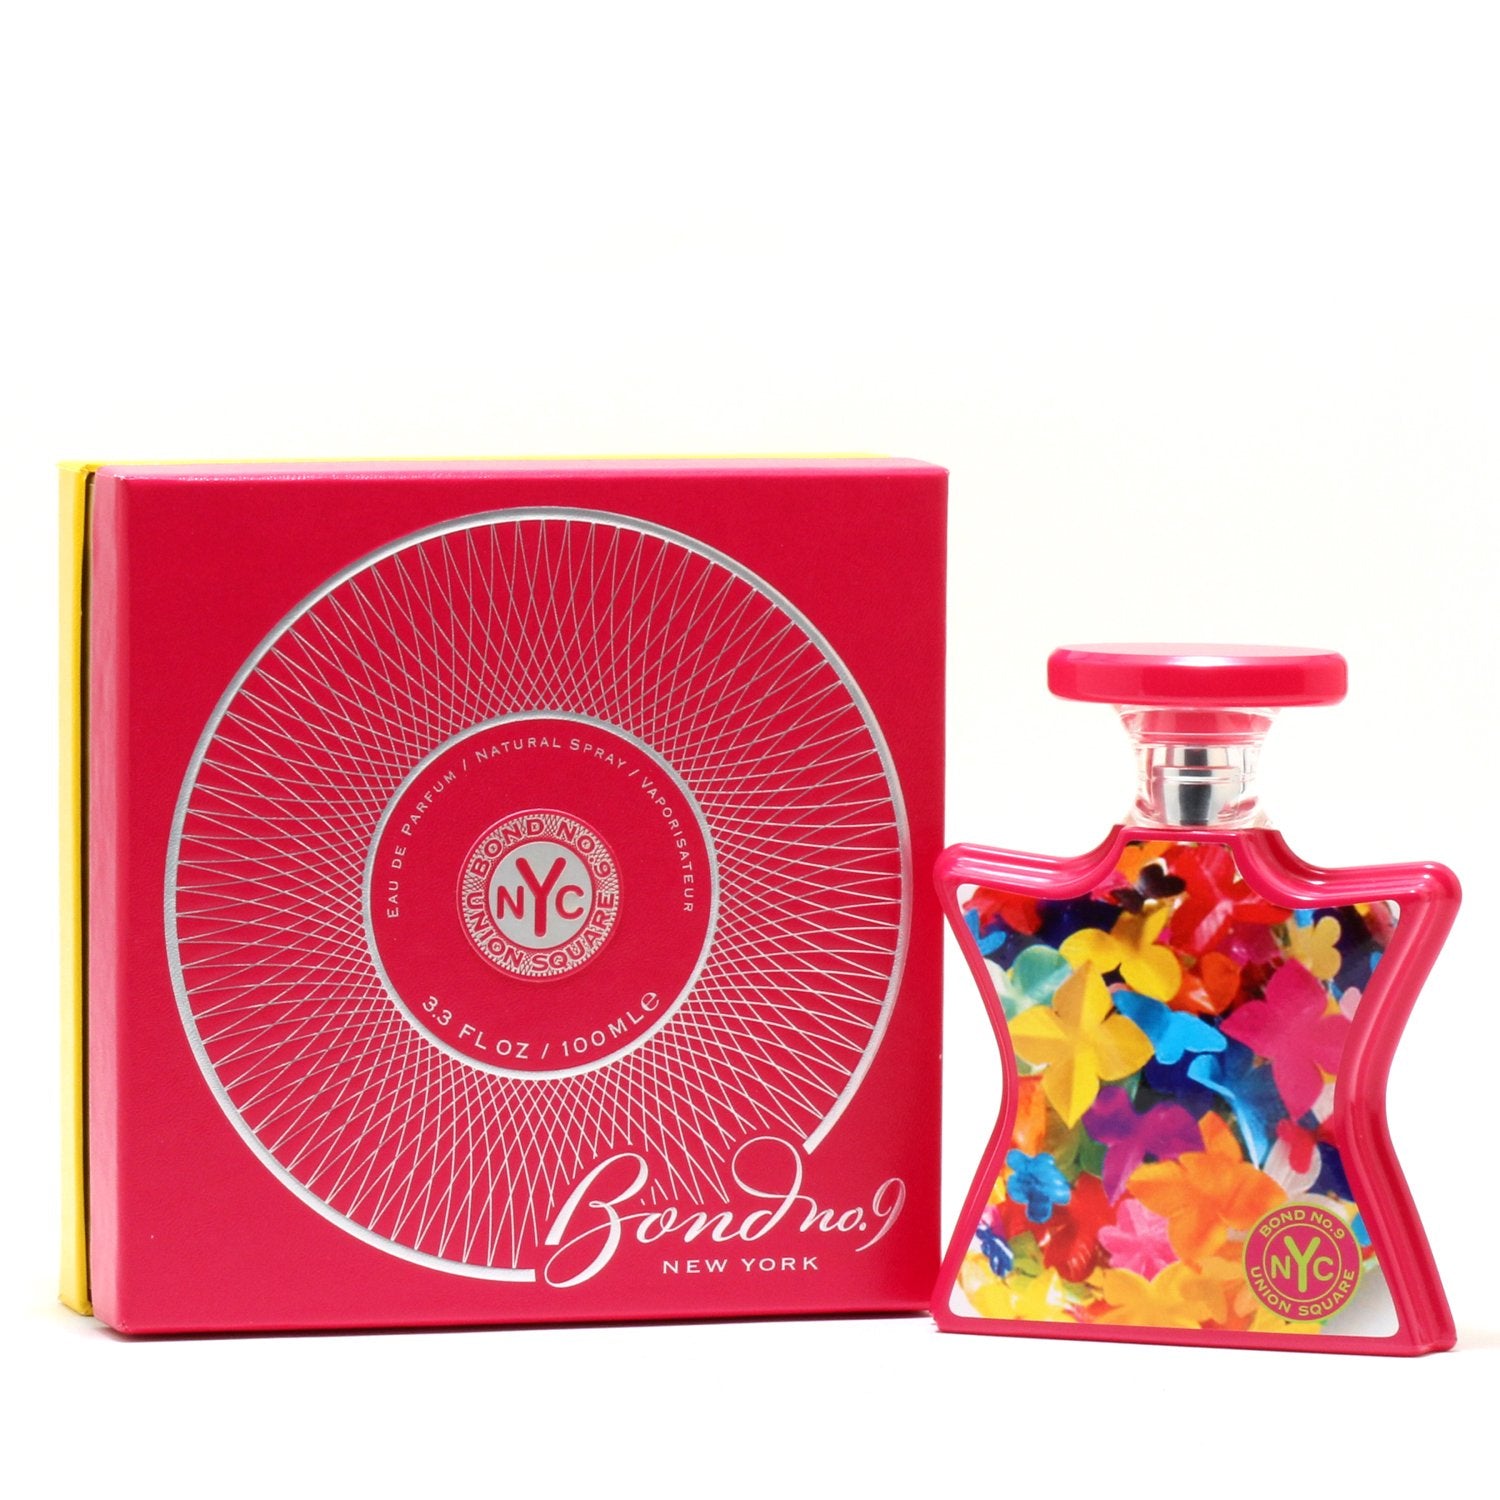 Perfume - BOND NO 9 UNION SQUARE FOR WOMEN - EAU DE PARFUM SPRAY, 3.4 OZ